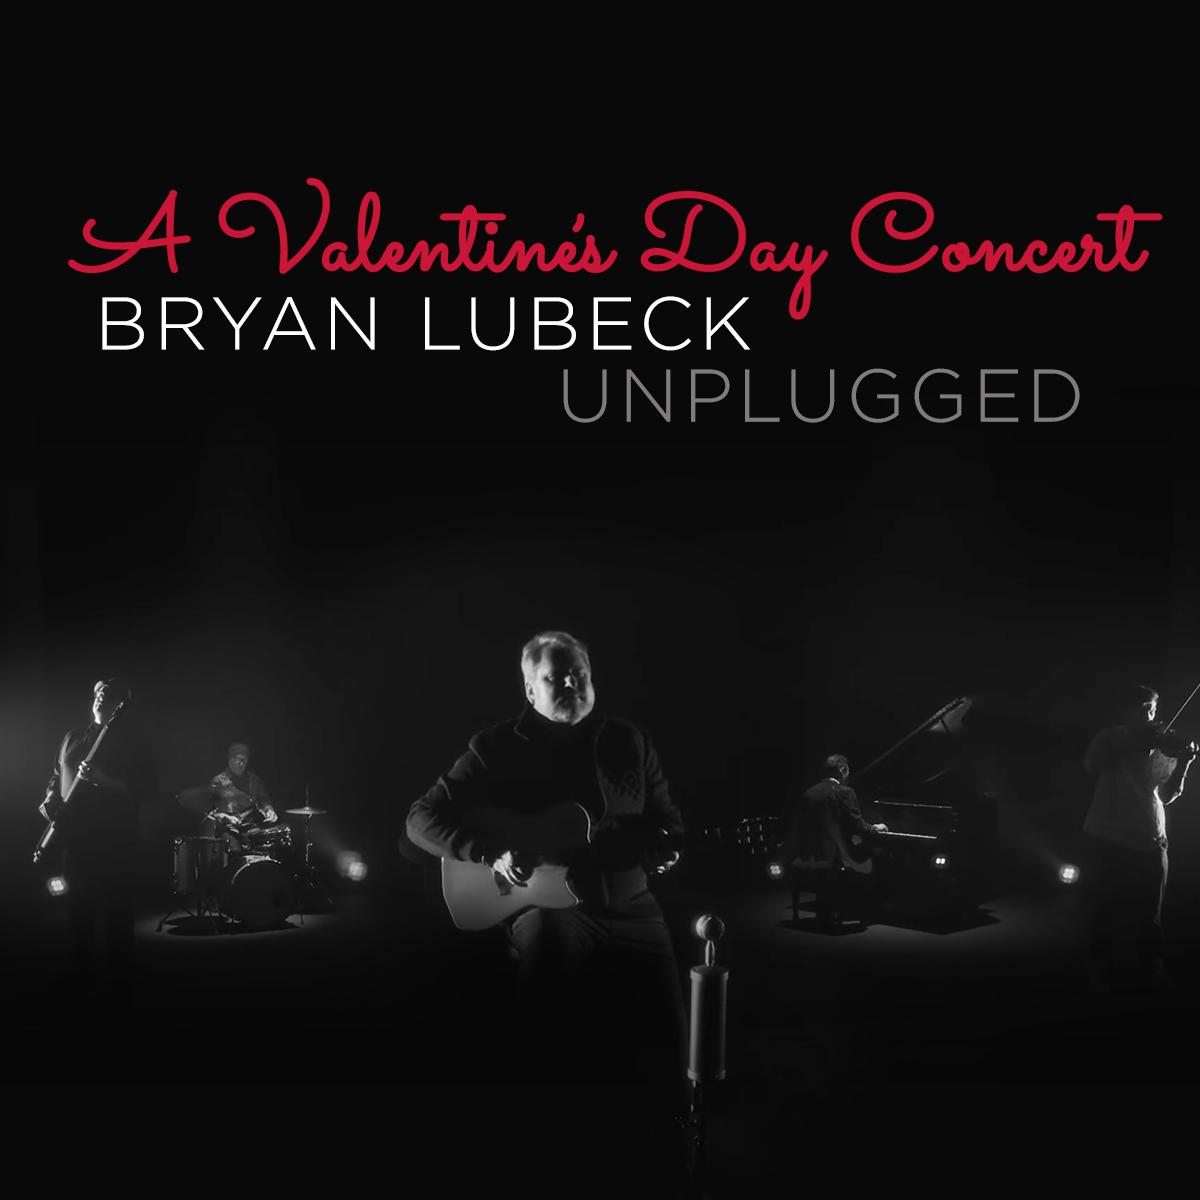 Bryan Lubeck Unplugged: A Valentine